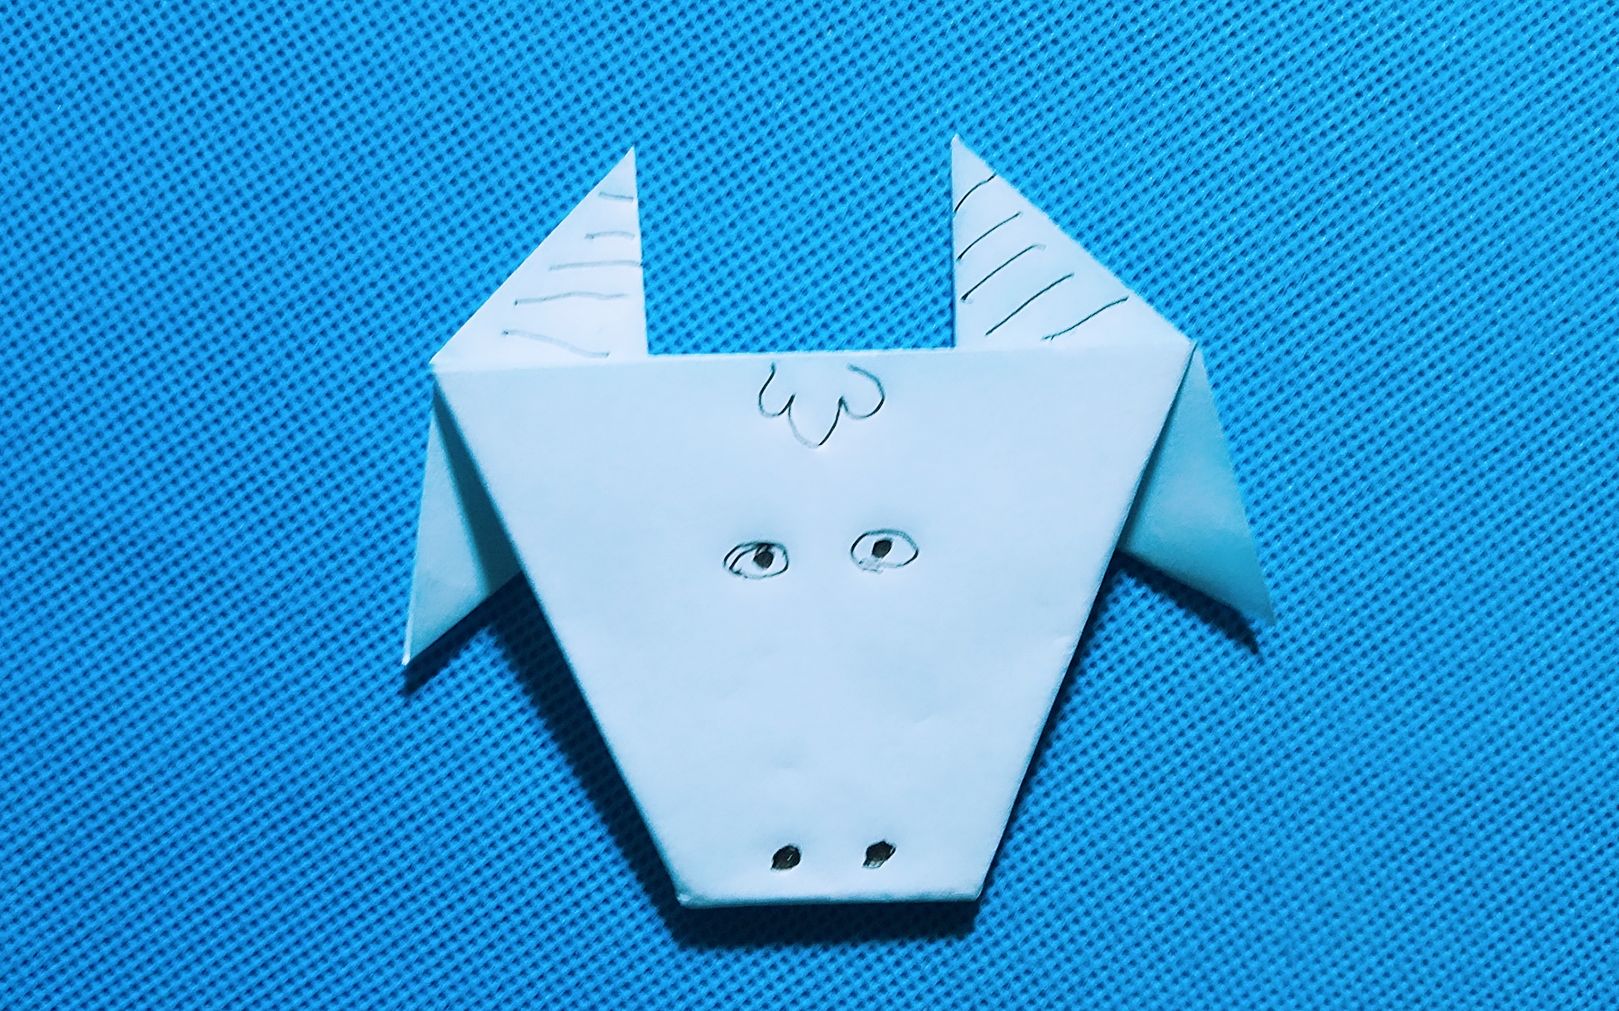 【折纸教程】折纸王子:小牛头折纸大全教程讲解详细一看就会